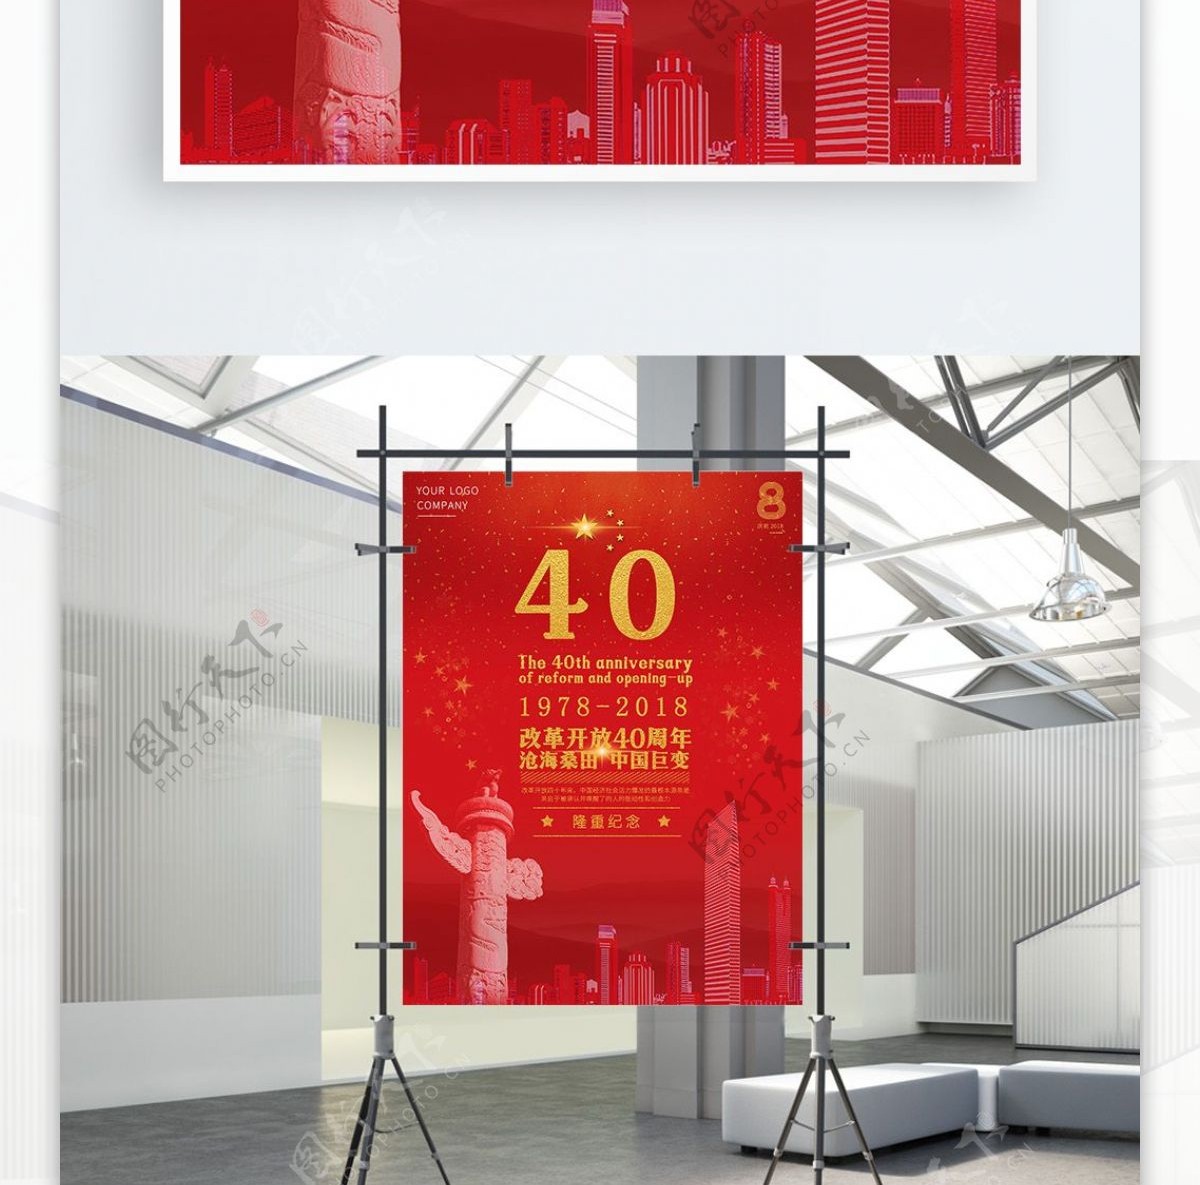 改革开放40周年红色时尚大气海报